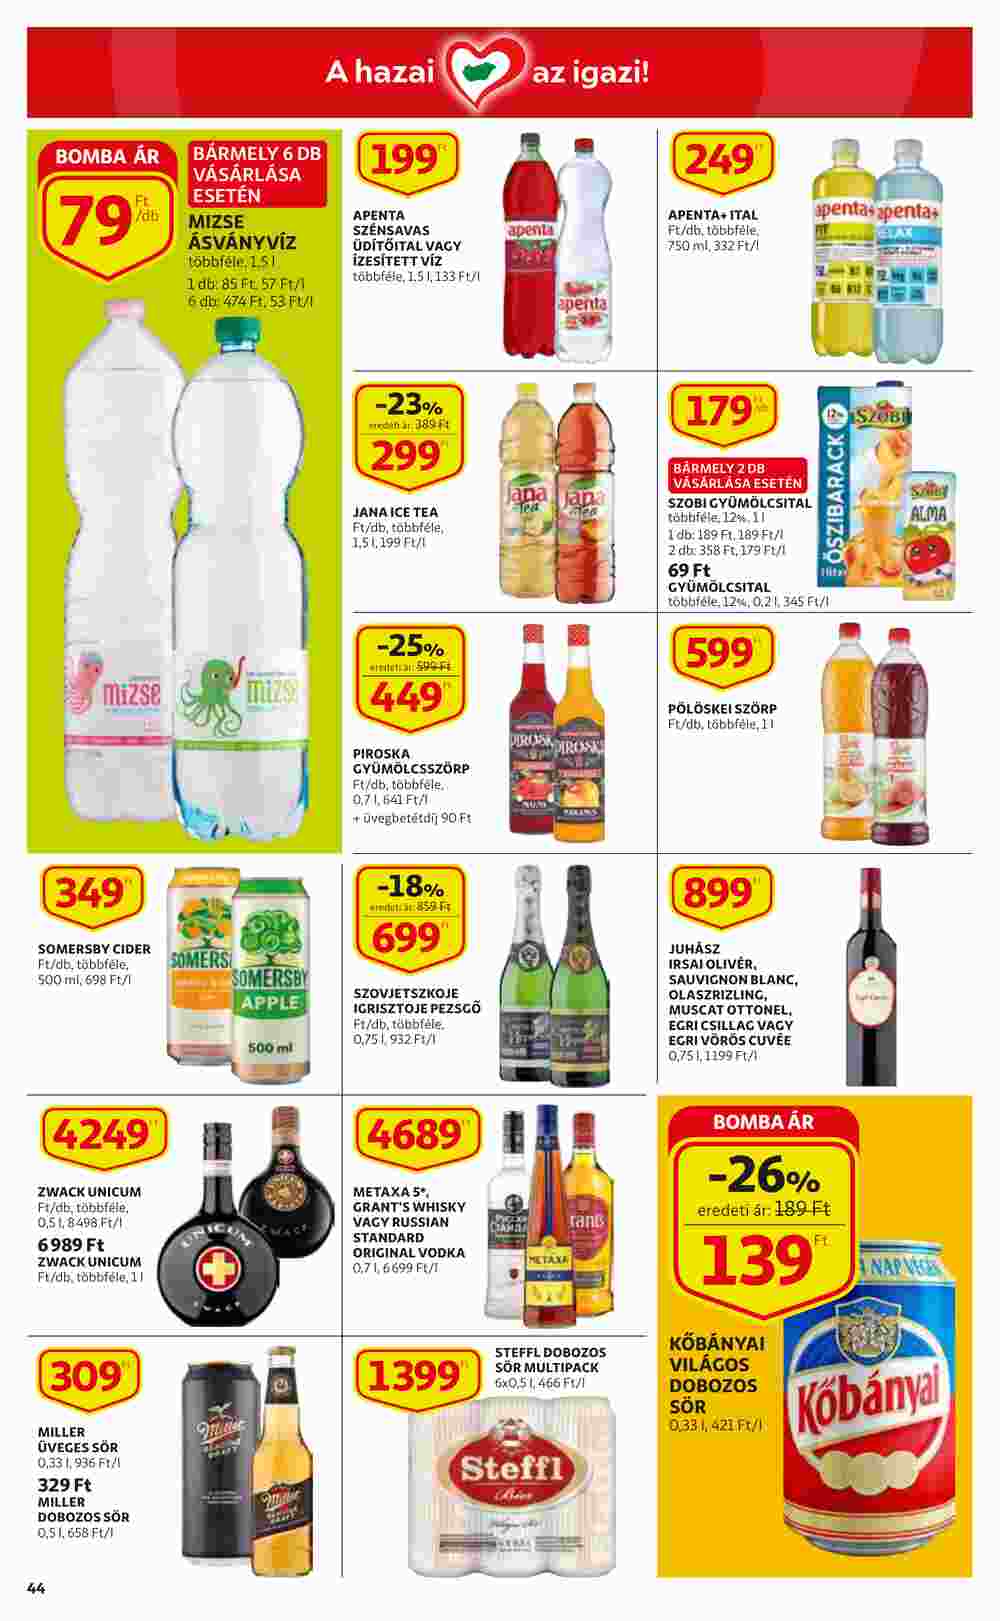 Auchan akciós újság 2022.02.17-től - 44. oldal.